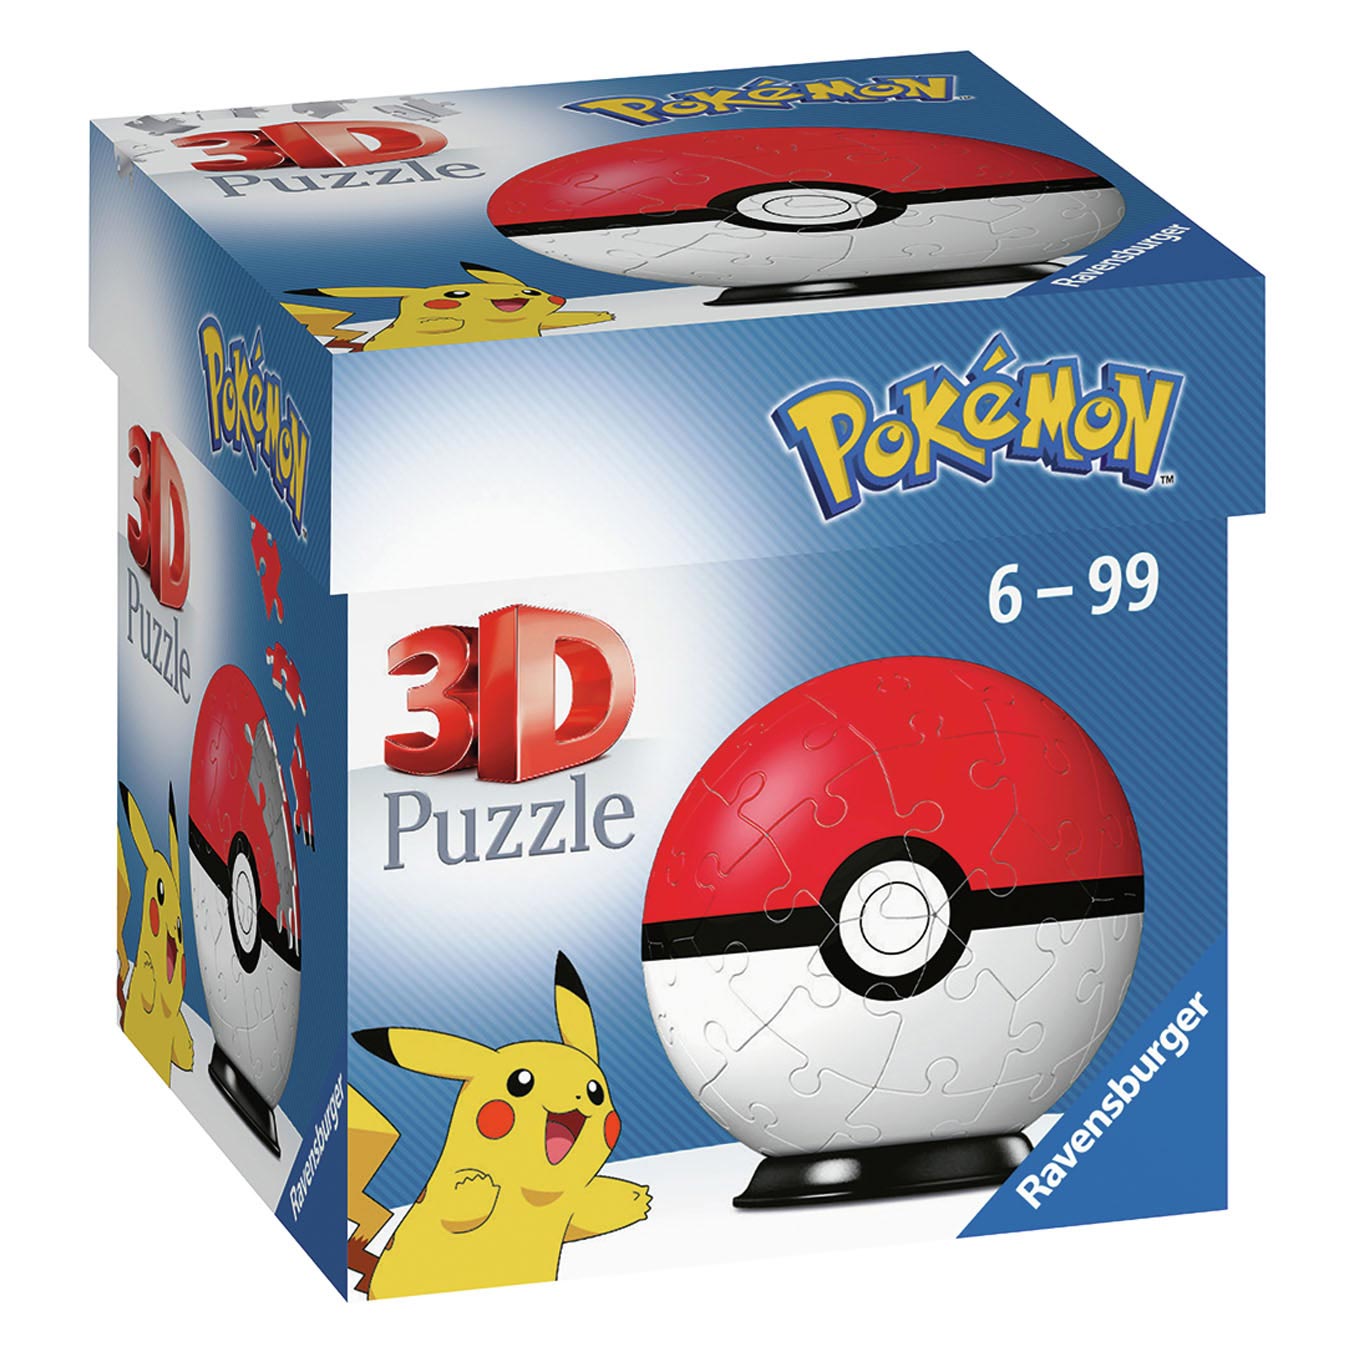 Pokémon Pokeball 3D Puzzel, 54st.